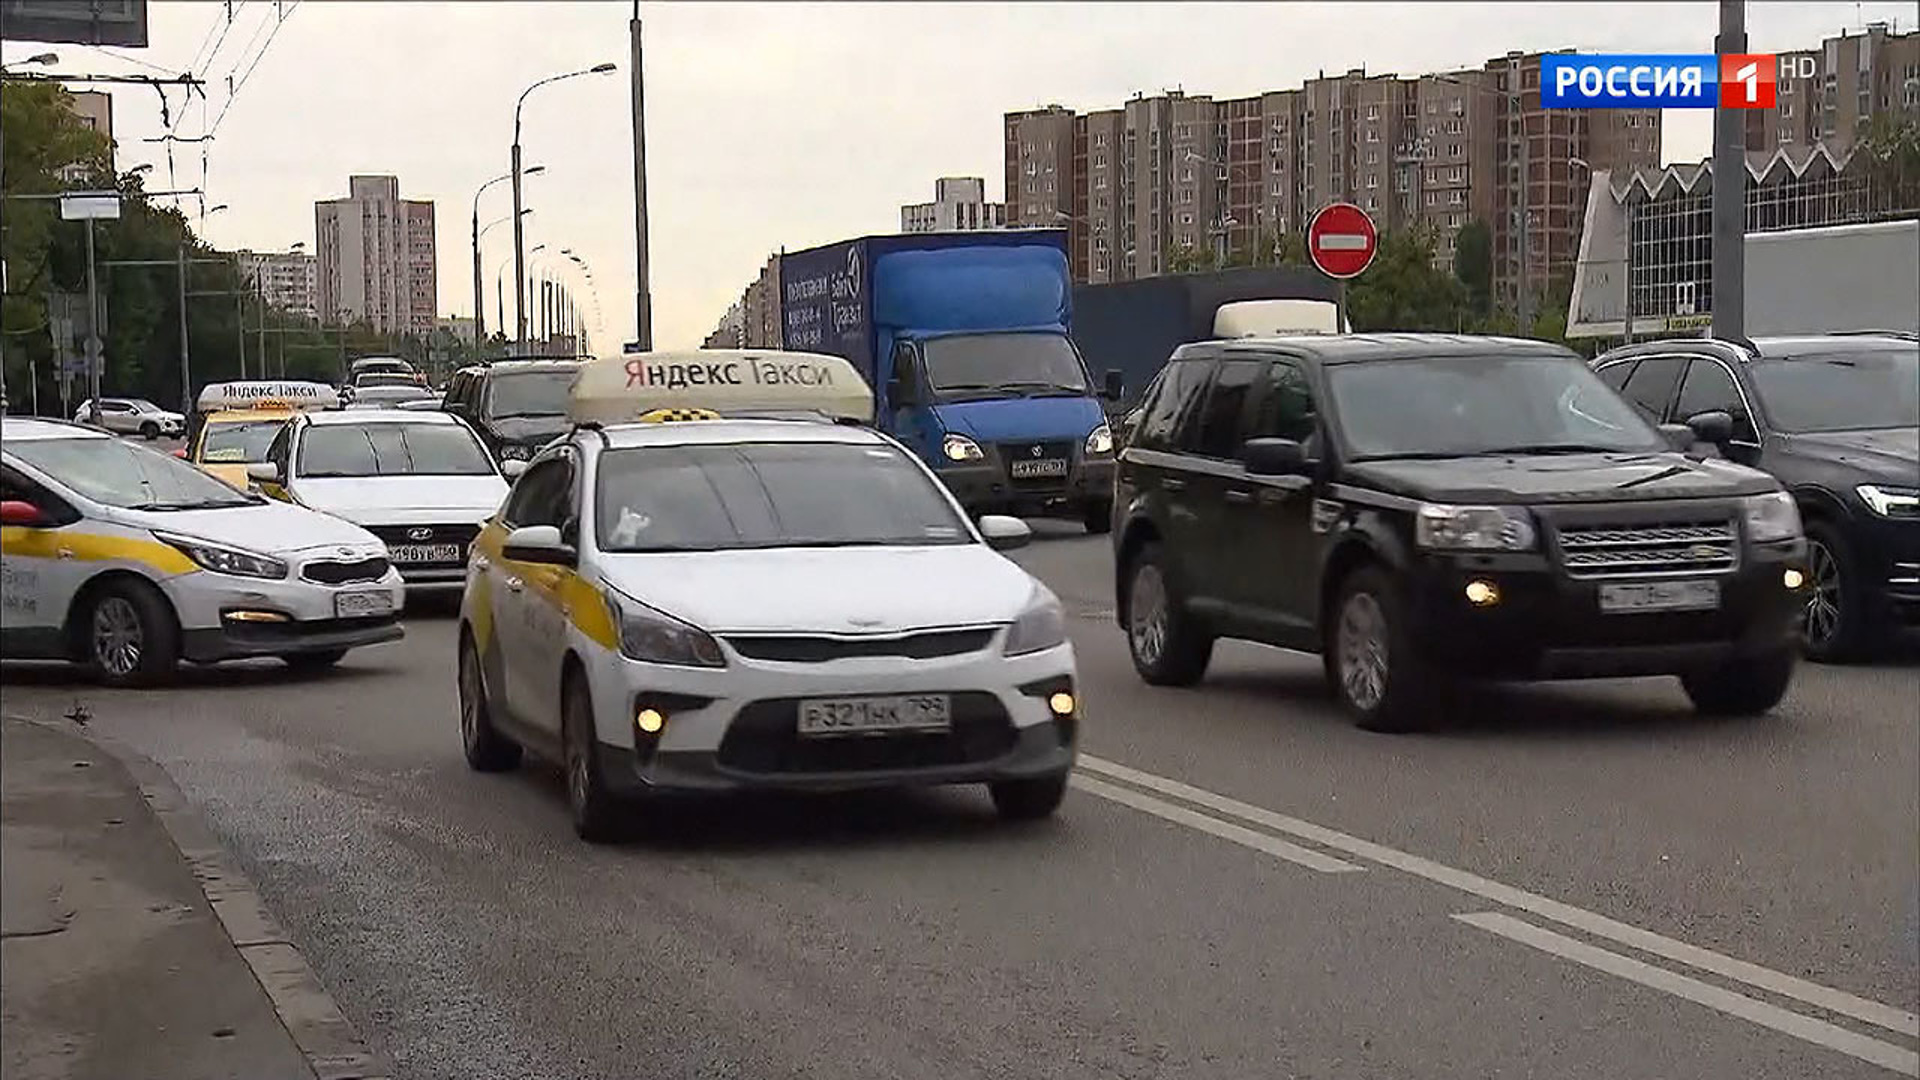 Можно такси ездить по выделенной полосе. Автобусная полоса для такси. Выделенная полоса для такси. Выделенные полосы в Москве для такси. Такси по автобусной полосе.